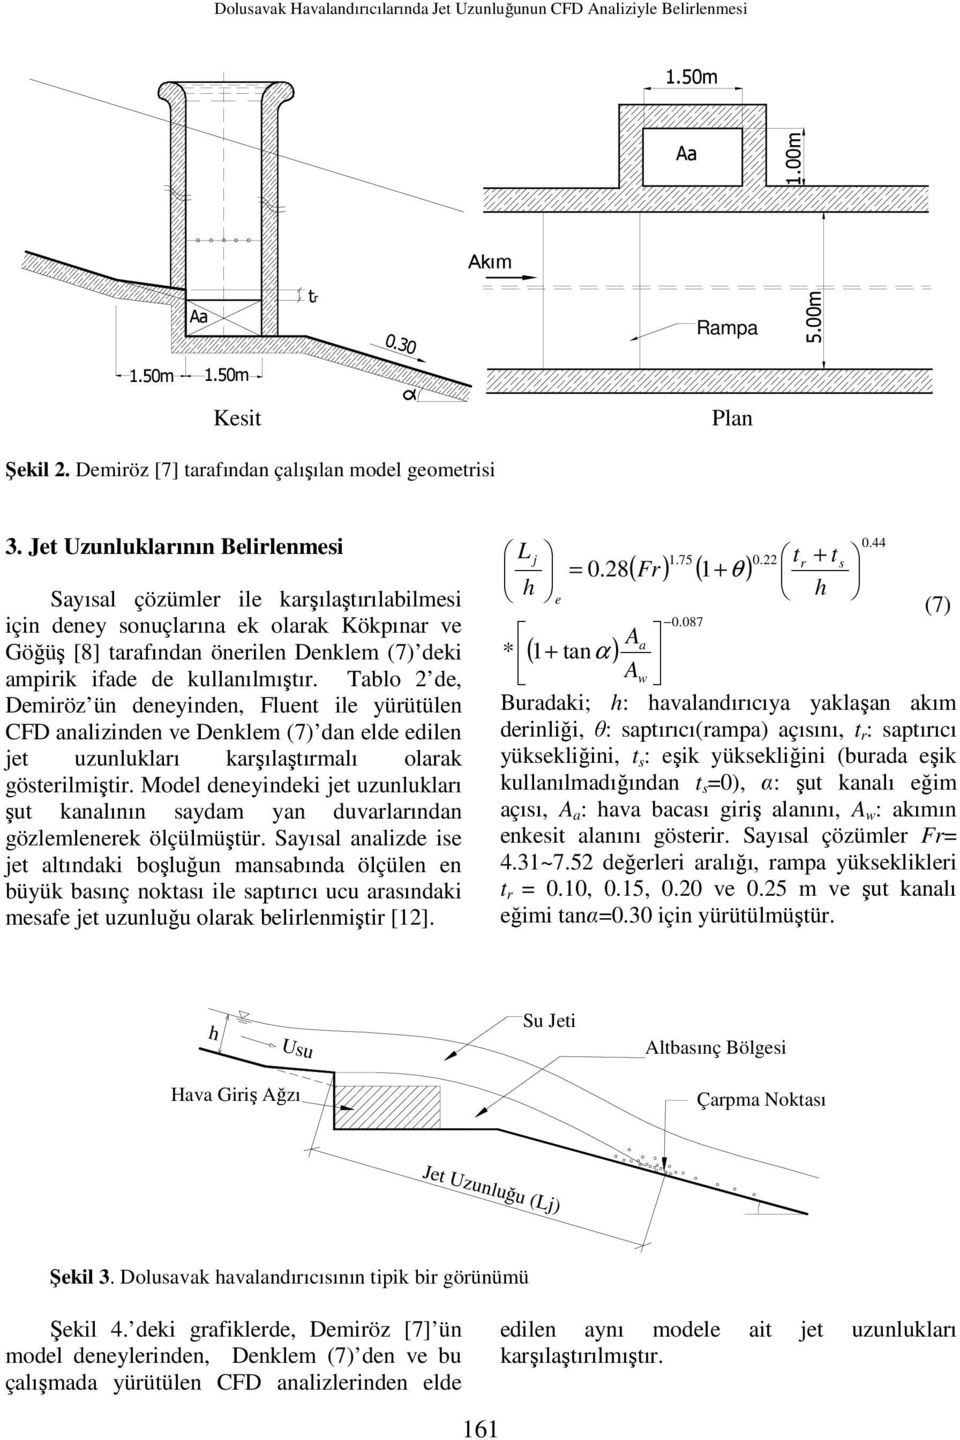 Jet Uzunluklarının Belirlenmesi Sayısal çözümler ile karşılaştırılabilmesi için deney sonuçlarına ek olarak Kökpınar ve Göğüş [8] tarafından önerilen Denklem (7) deki ampirik ifade de kullanılmıştır.